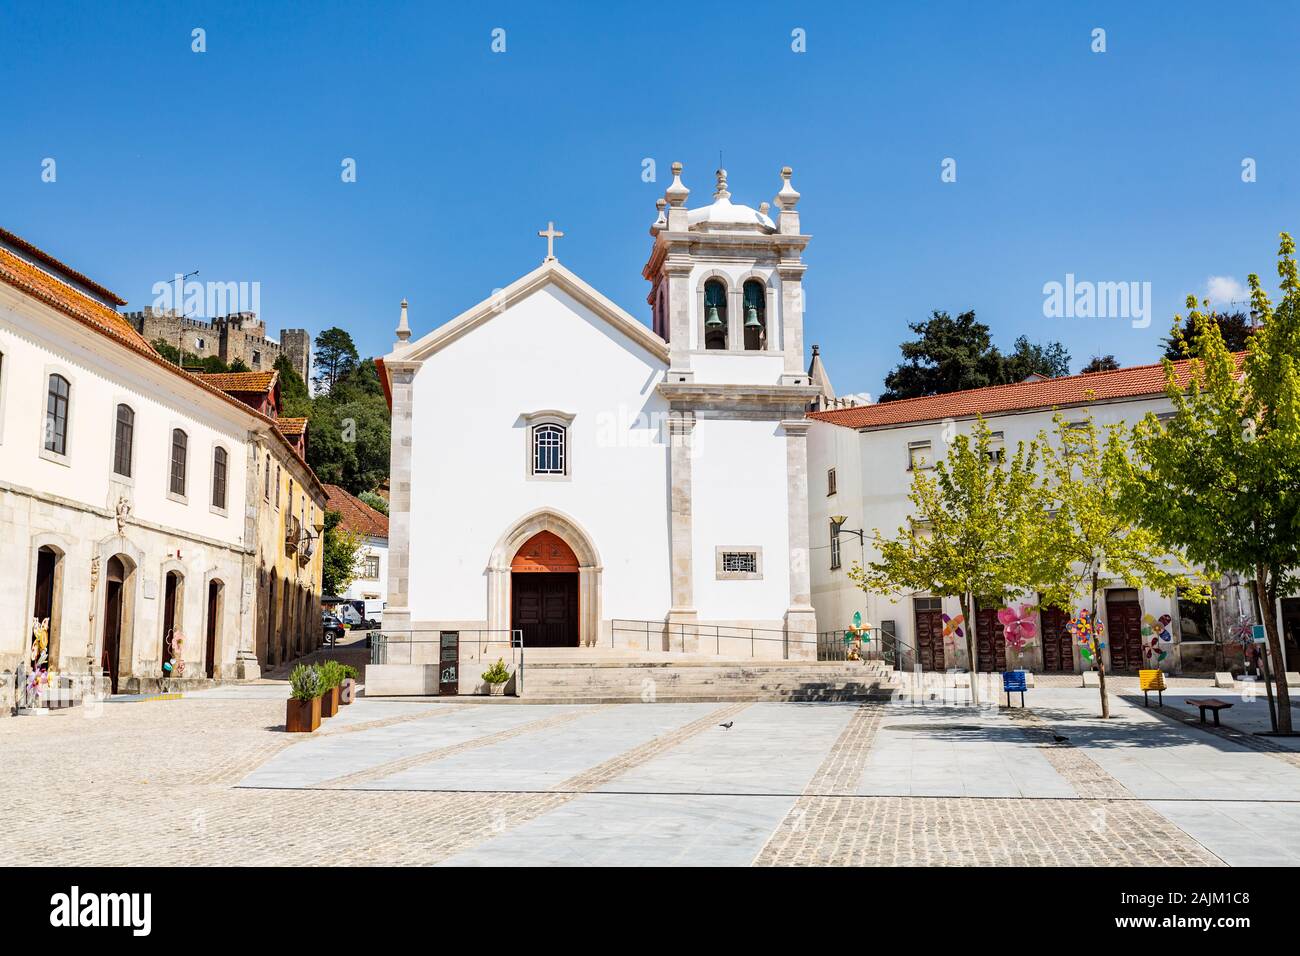 Façade de l'ancienne église paroissiale de Saint Martin, reconstruite au 16e siècle dans la ville de Pombal, Coimbra, Portugal Banque D'Images